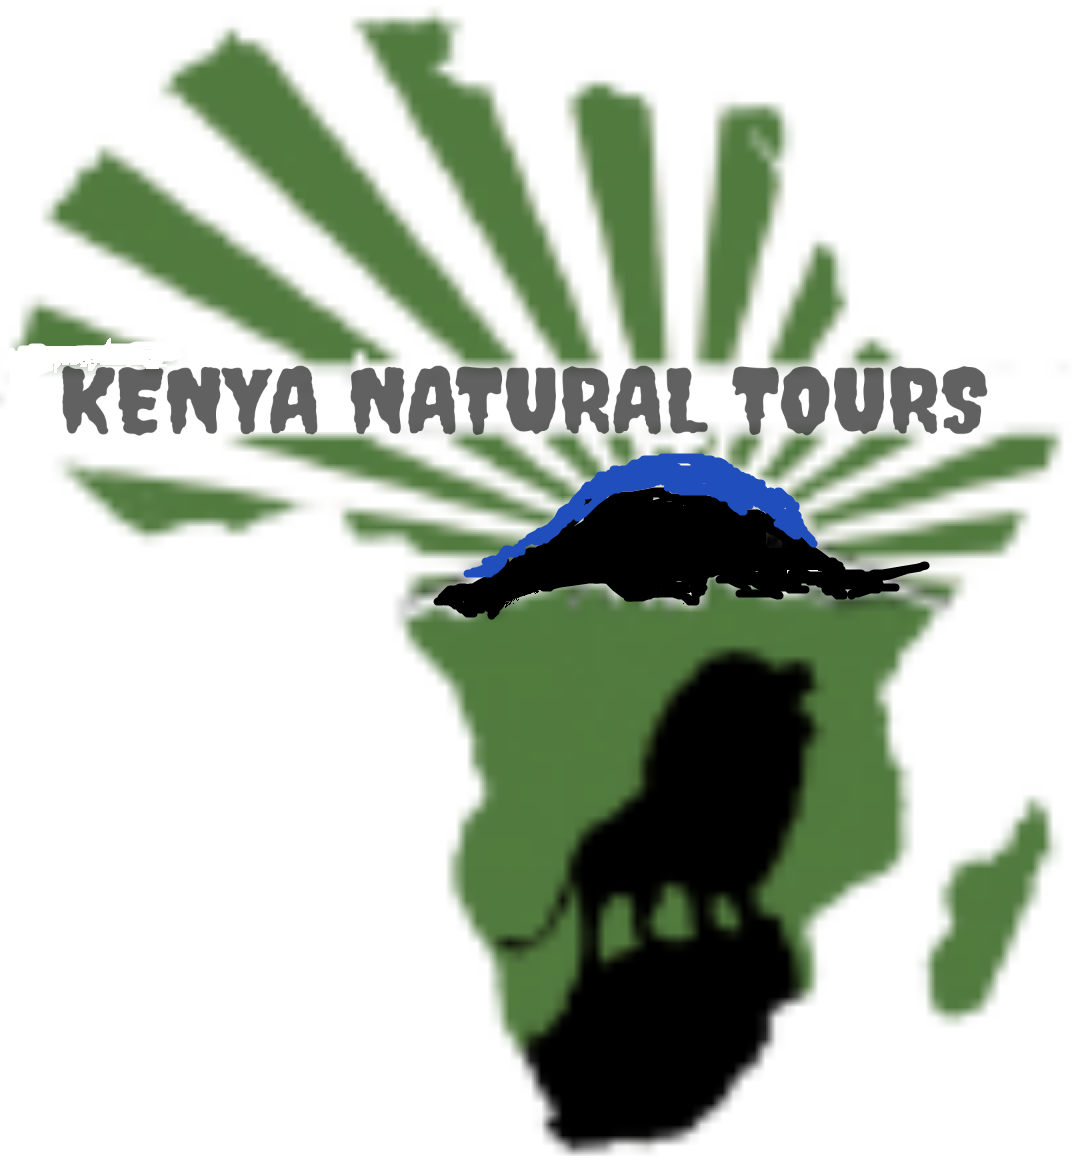 12 days Kenya Maasai mara group joining judget tours packages cost-Kenya Natural Tours,masai mara itinerary operators